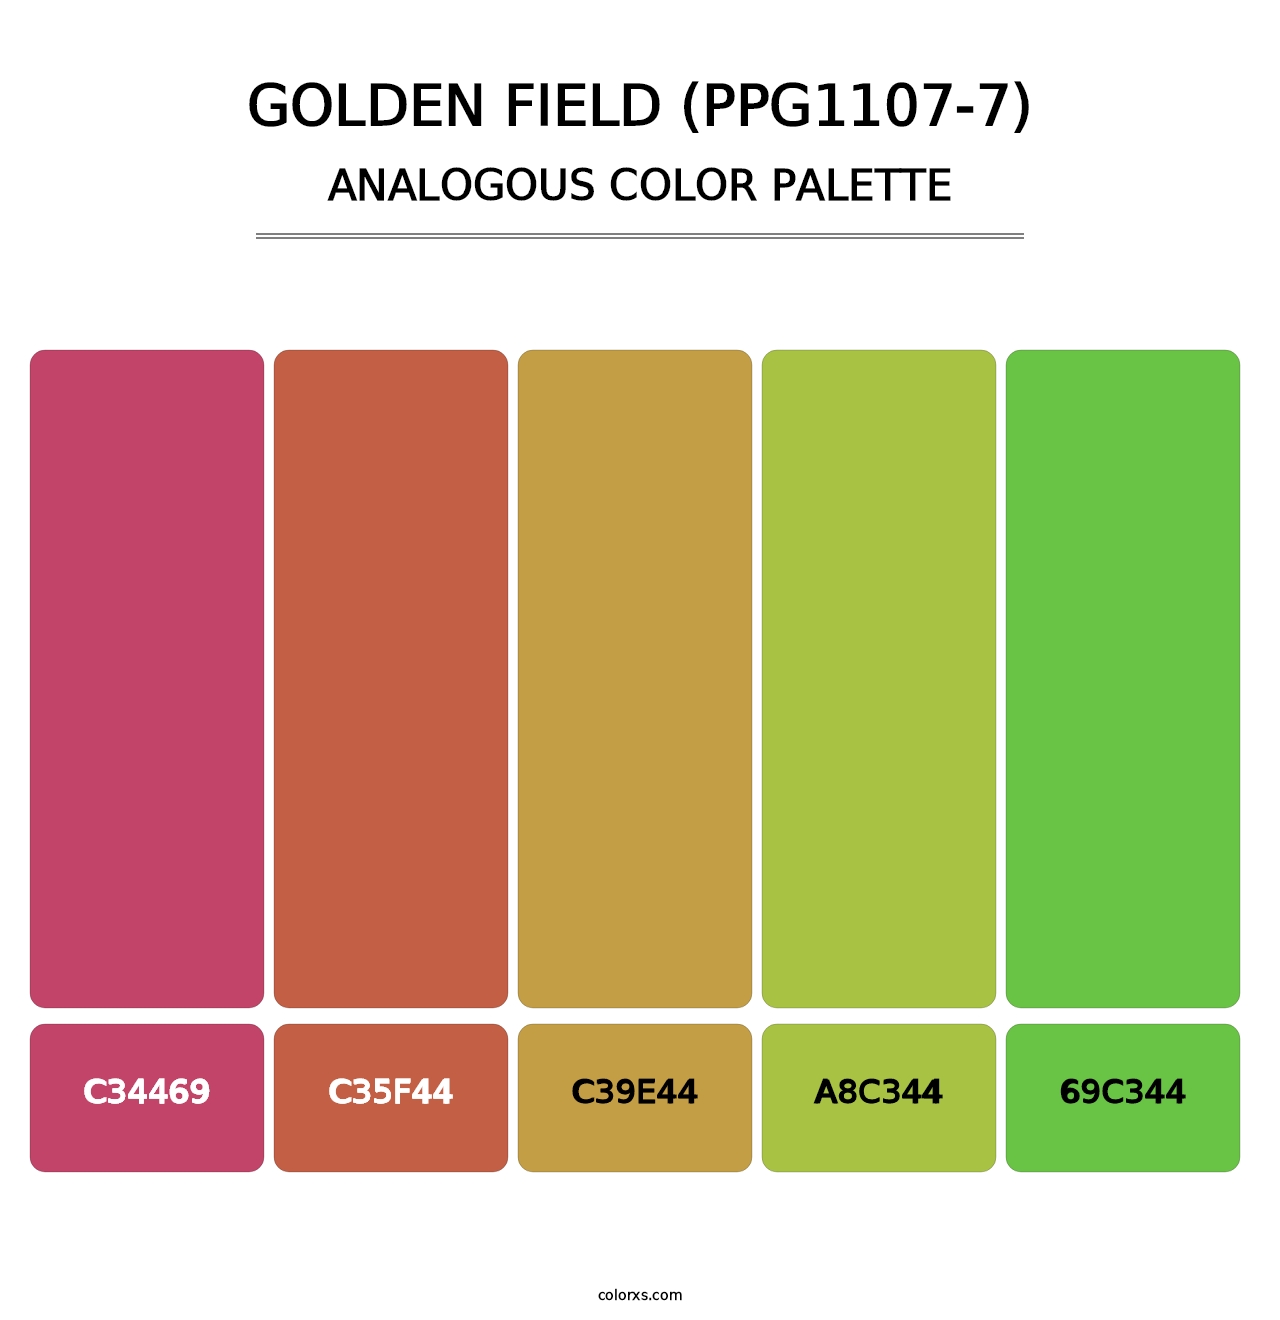 Golden Field (PPG1107-7) - Analogous Color Palette